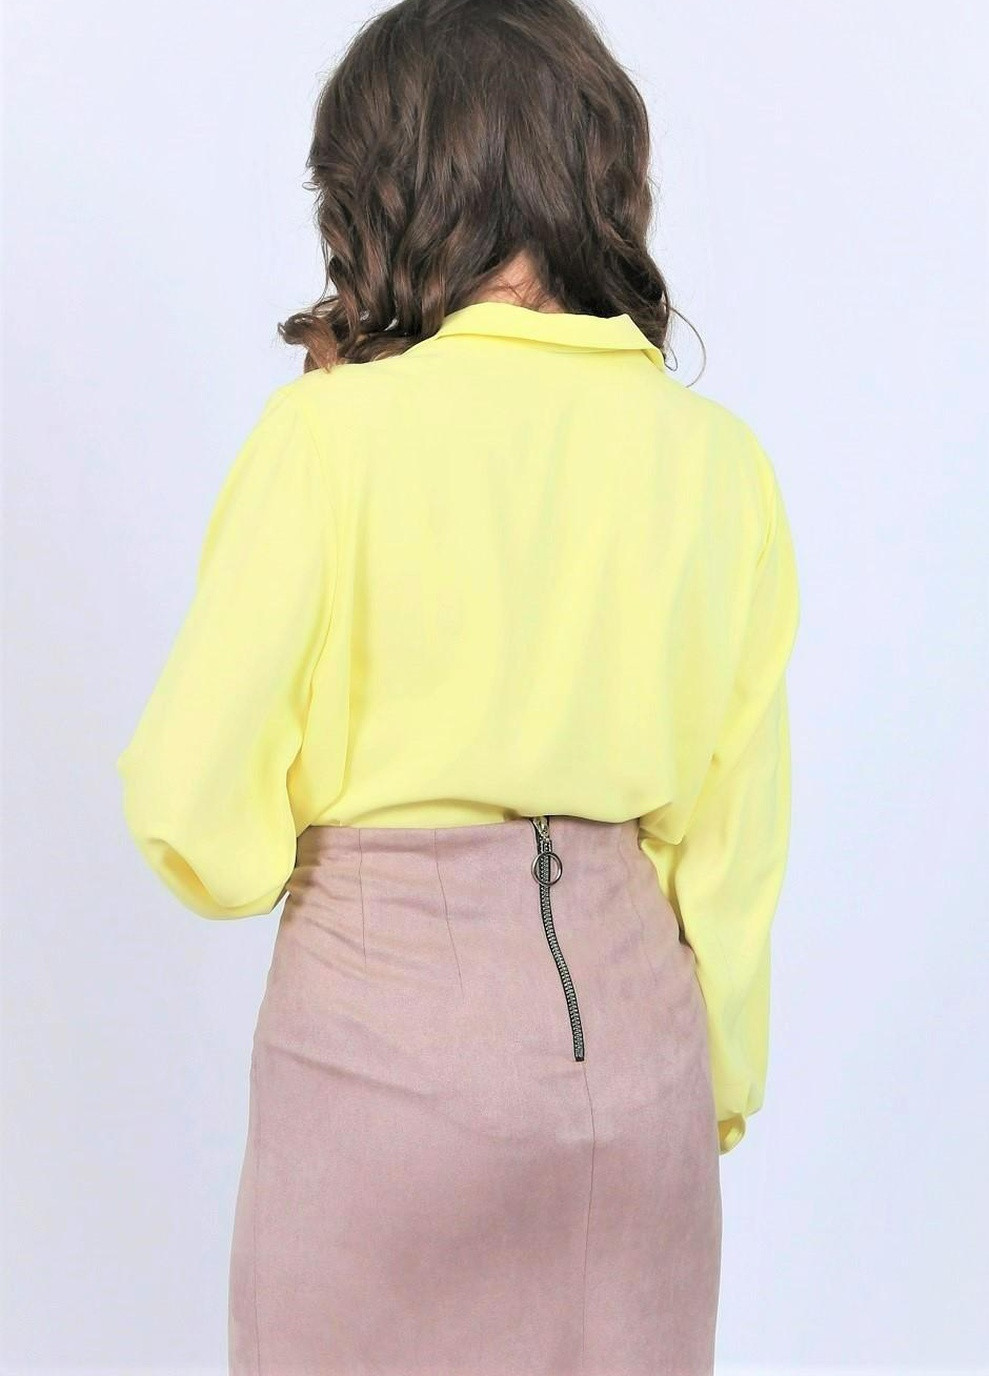 Жёлтая блузка женская 052 однотонный софт желтая Актуаль